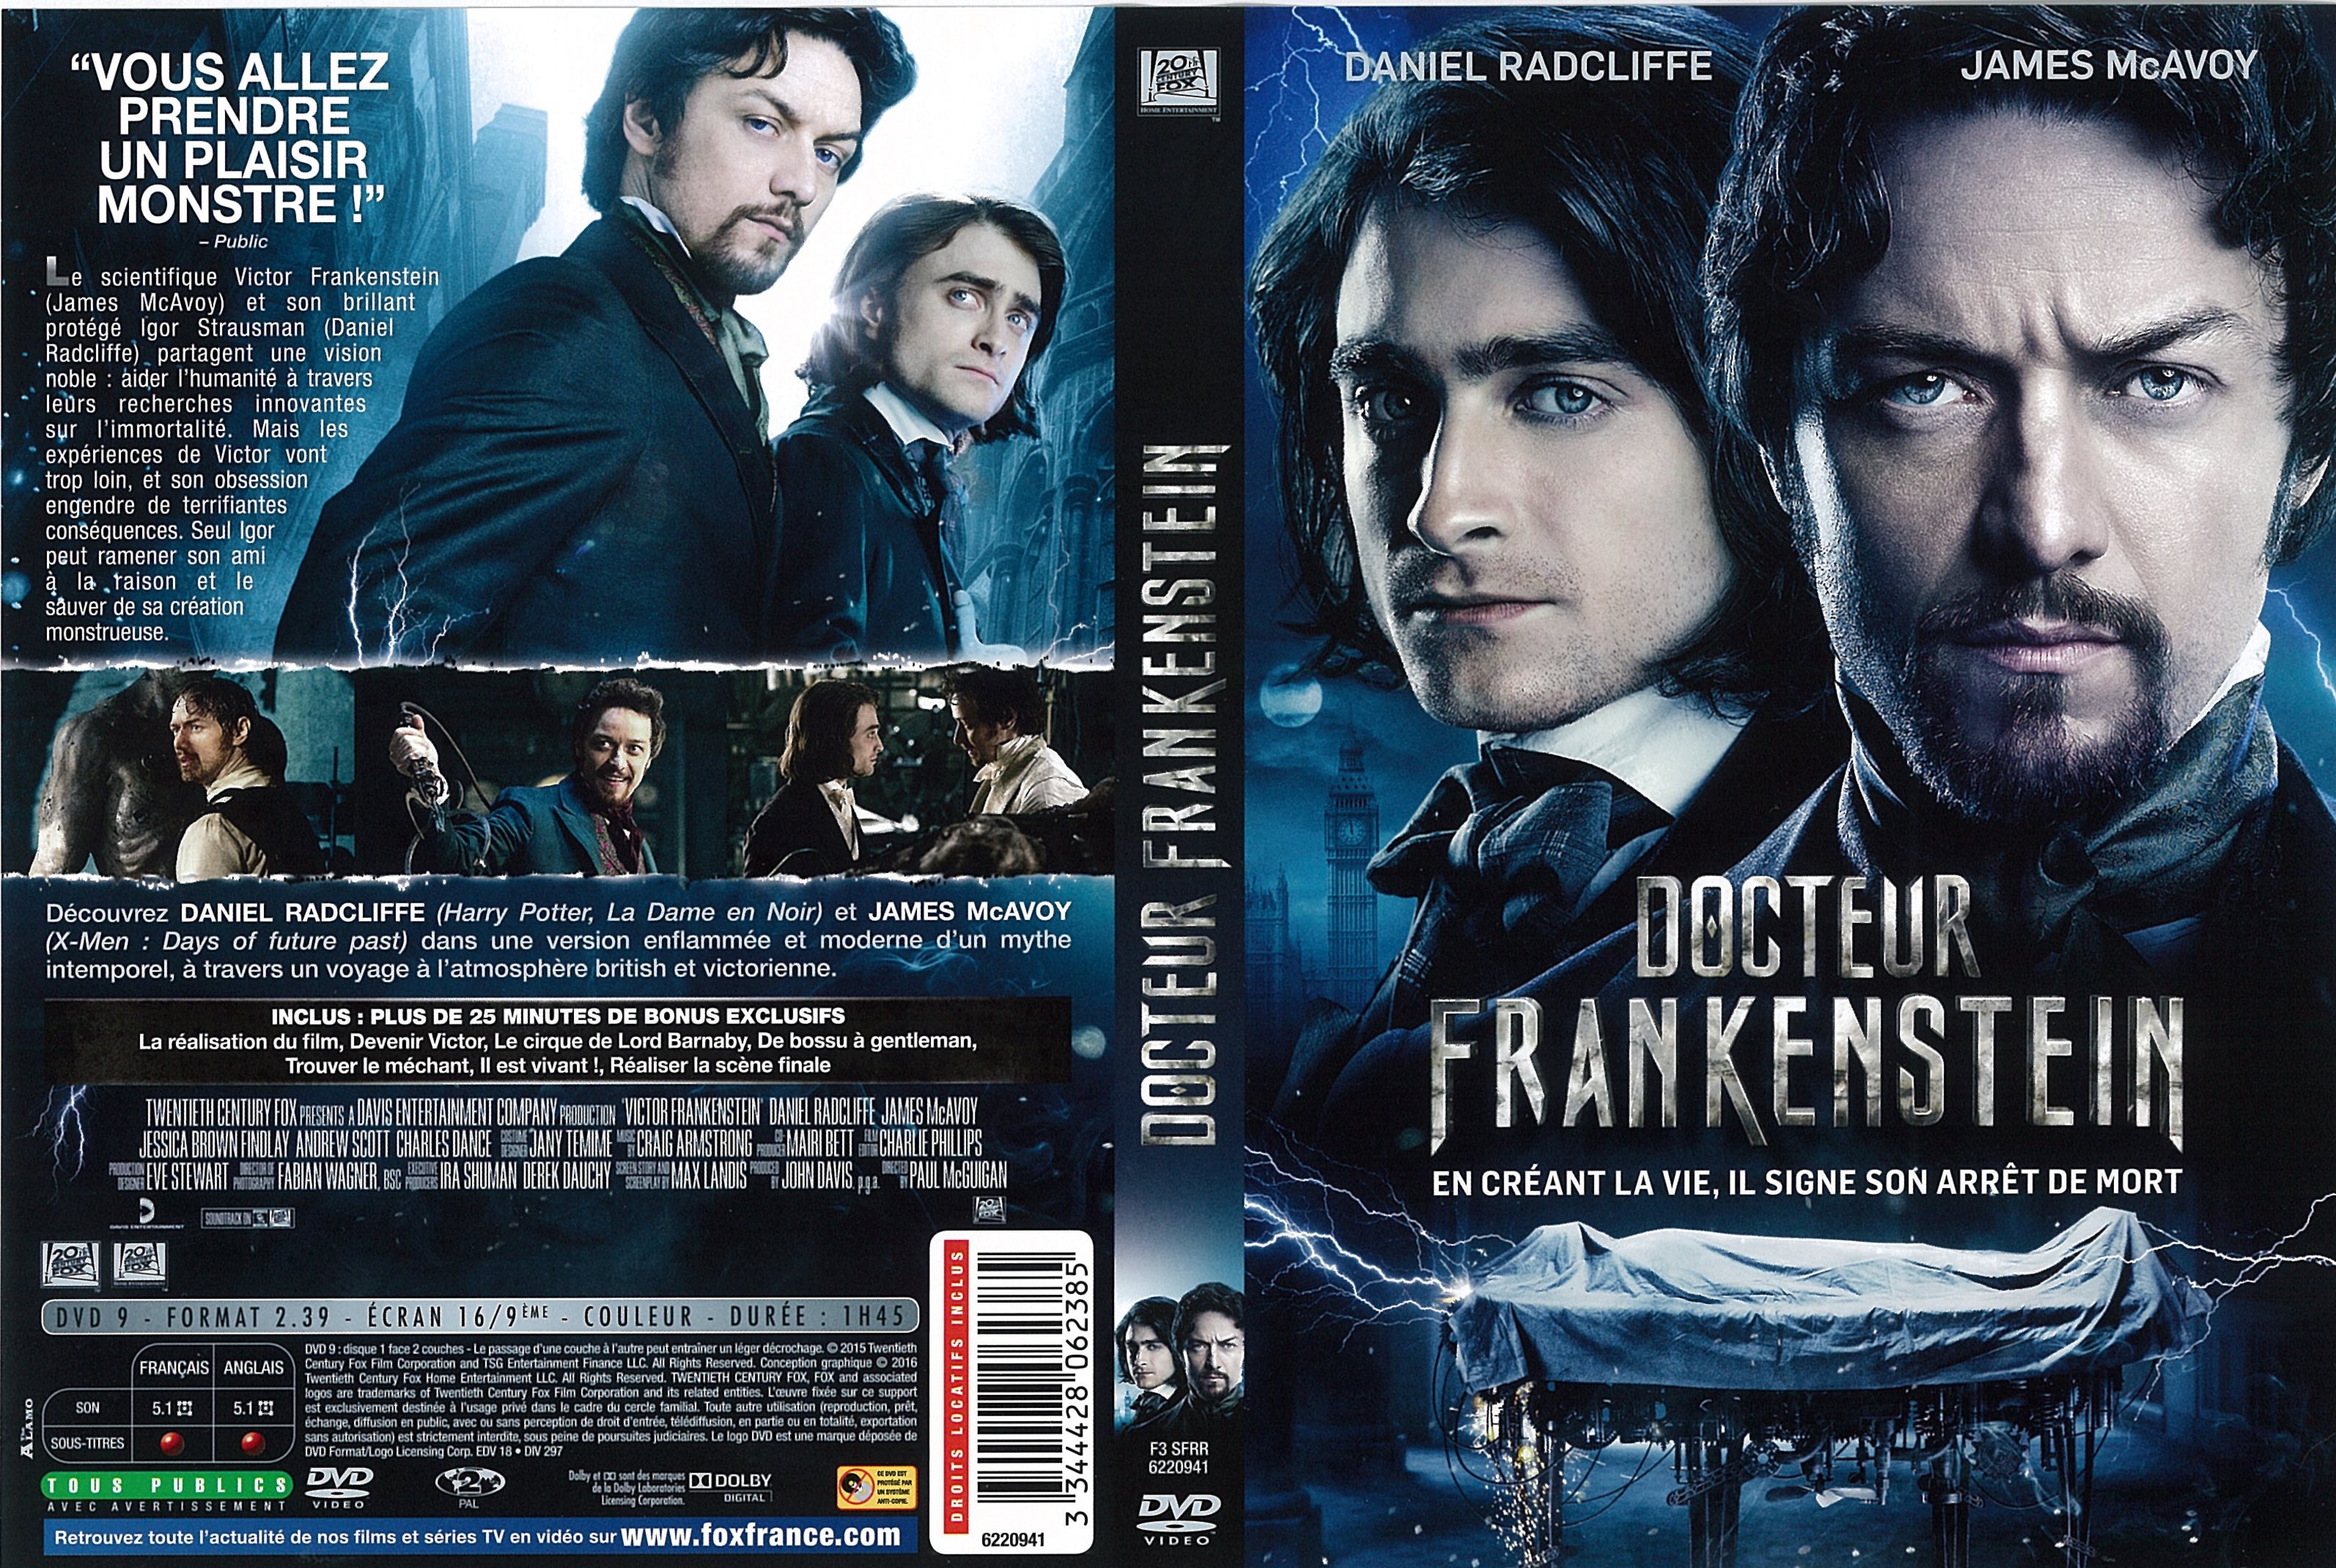 Jaquette DVD Docteur Frankenstein